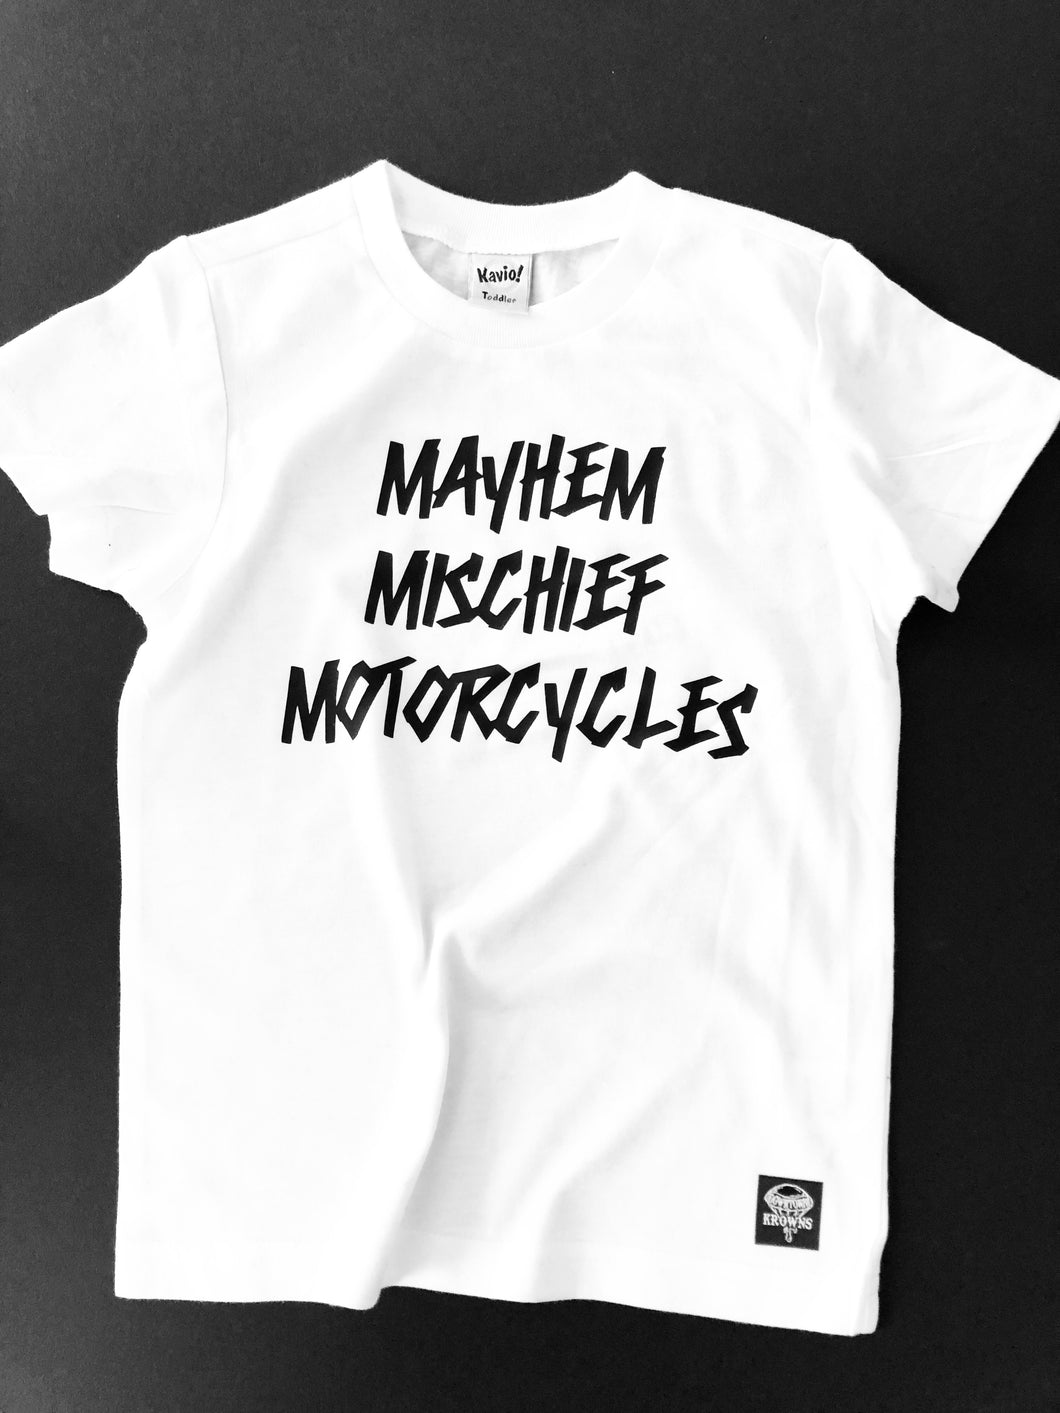 Kids Mayhem Mischief Motorcycles tee